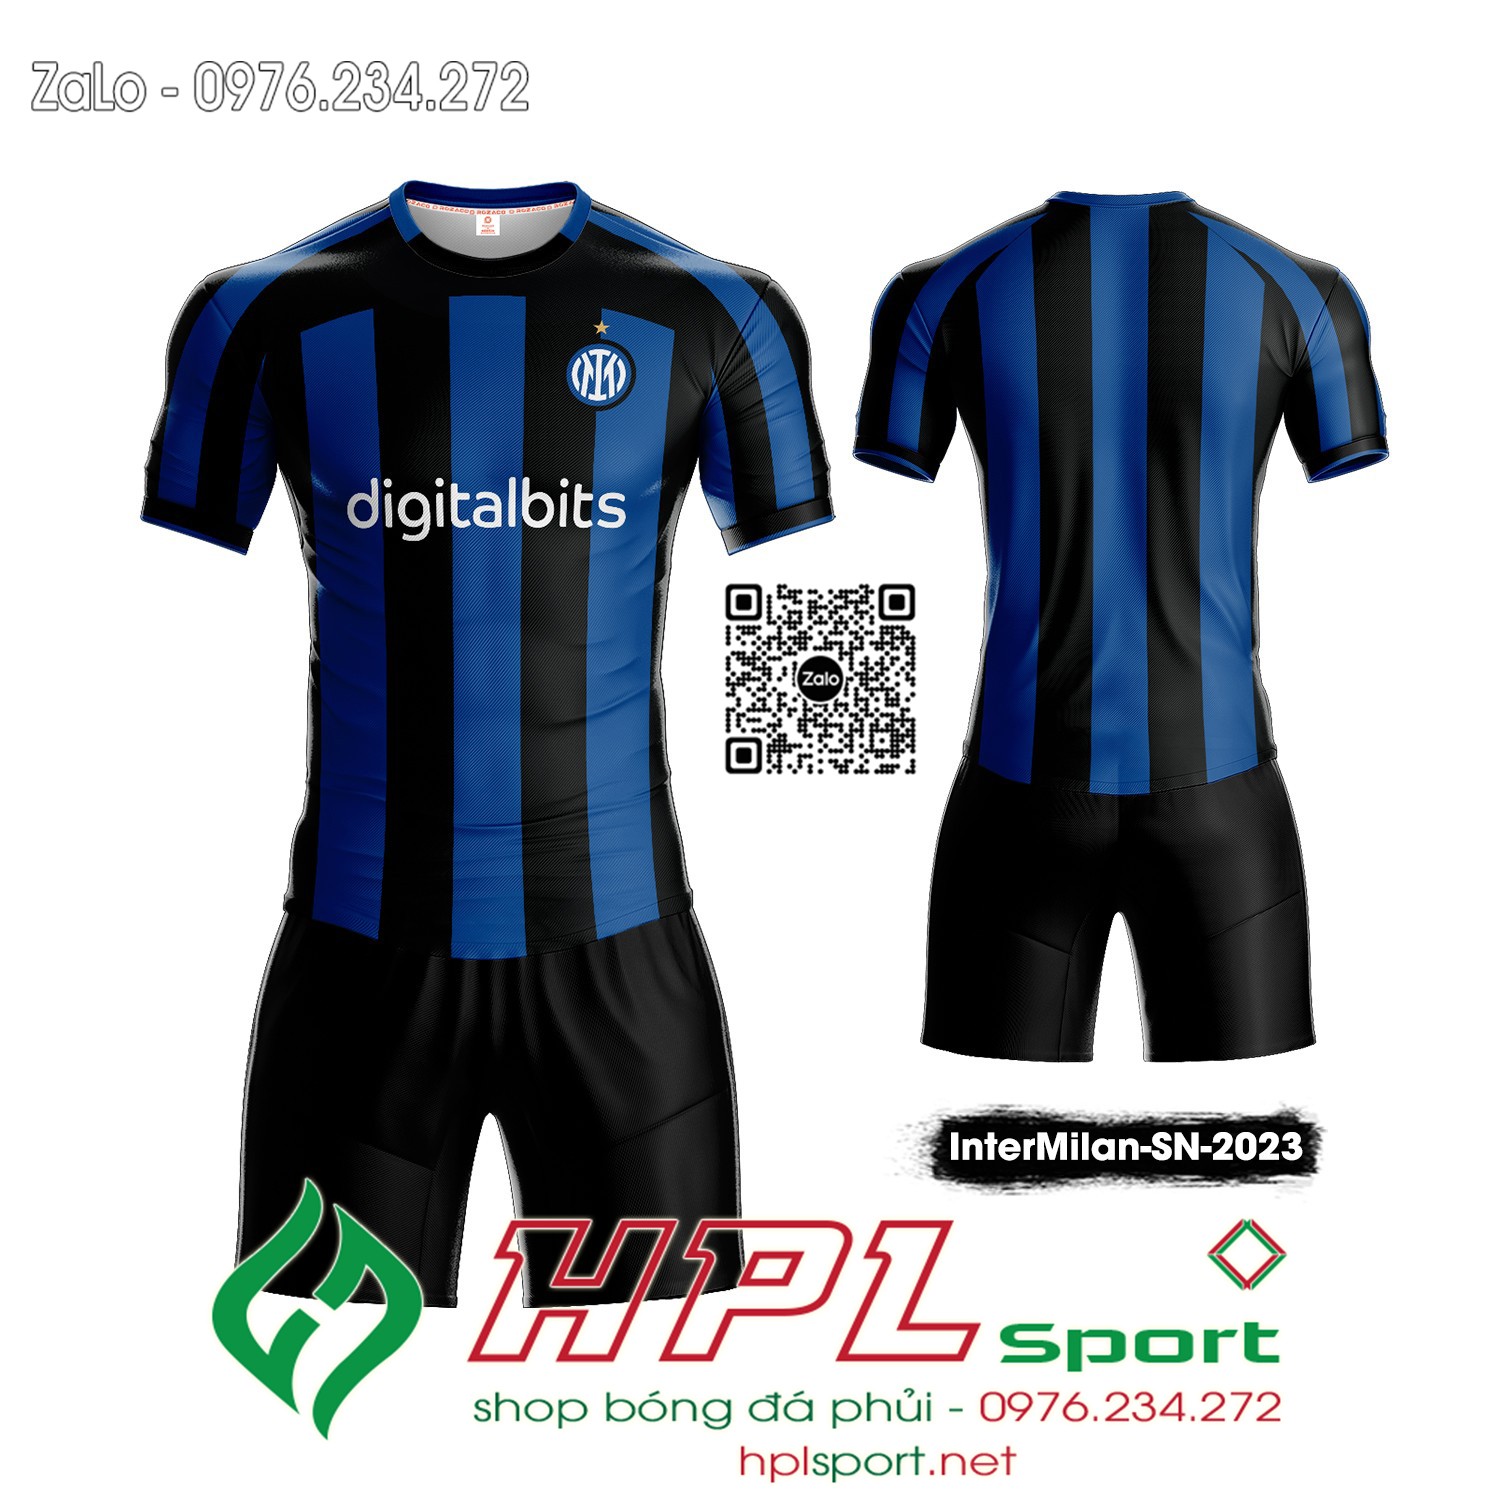 Mẫu áo đấu CLB Inter Milan sân nhà màu đen phối xanh bích